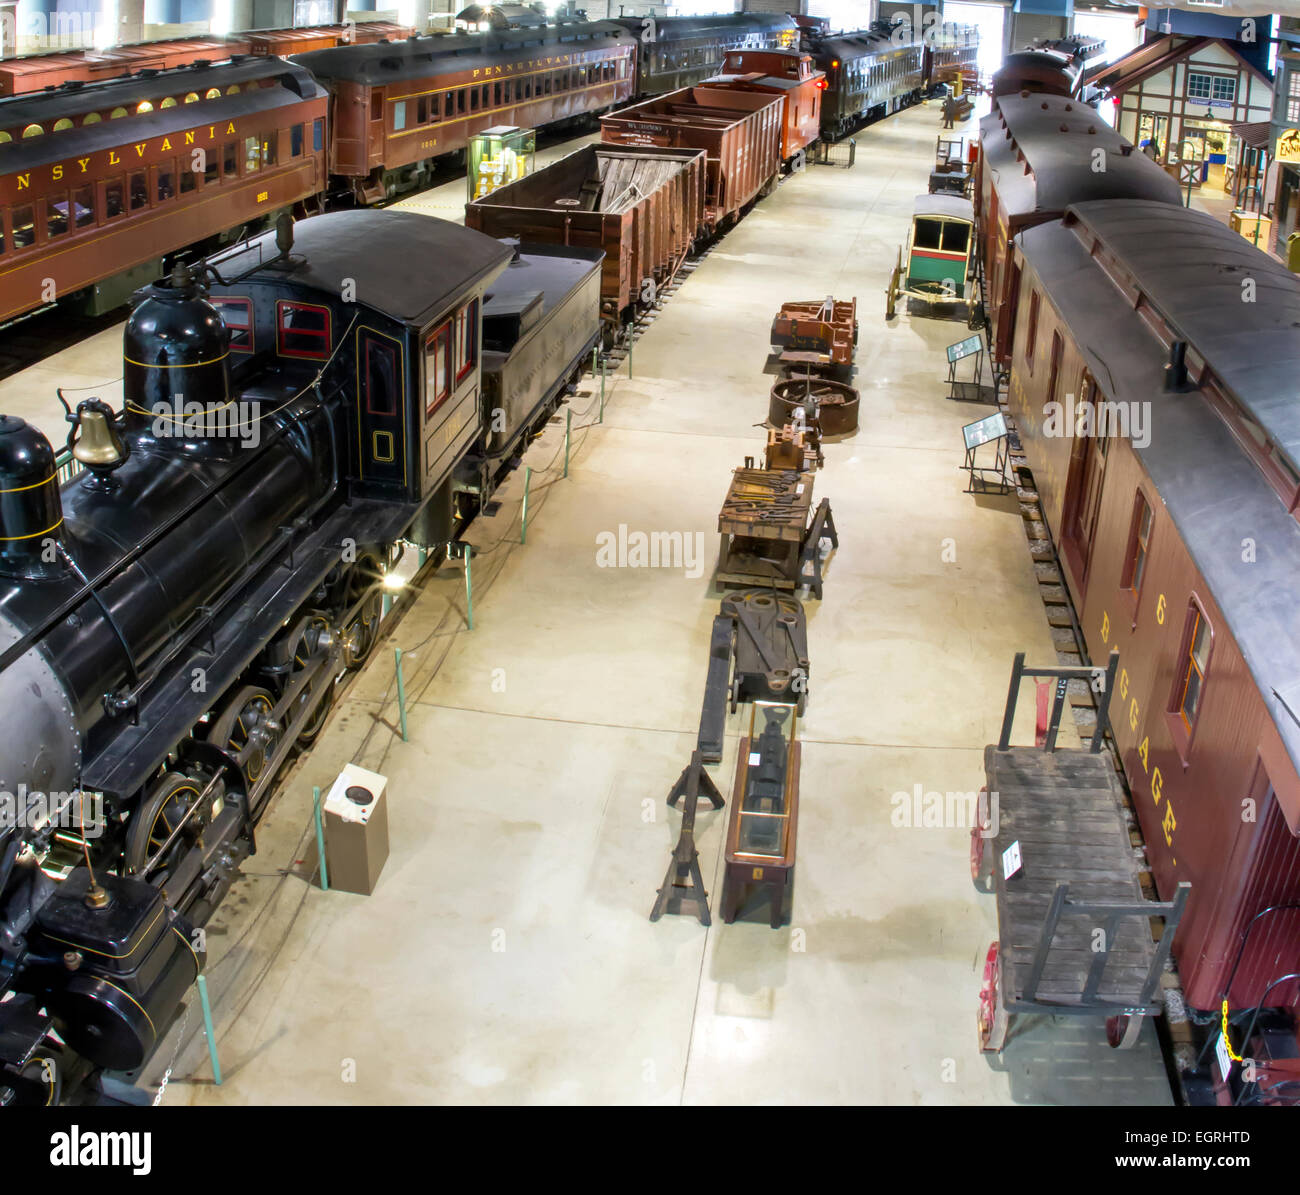 Ronks, PA, USA - 22. Februar 2015: Antike Waggons und Zusatzausrüstung auf Schienen in der Nähe von einer Plattform ein Modell-Bahnhof Stockfoto